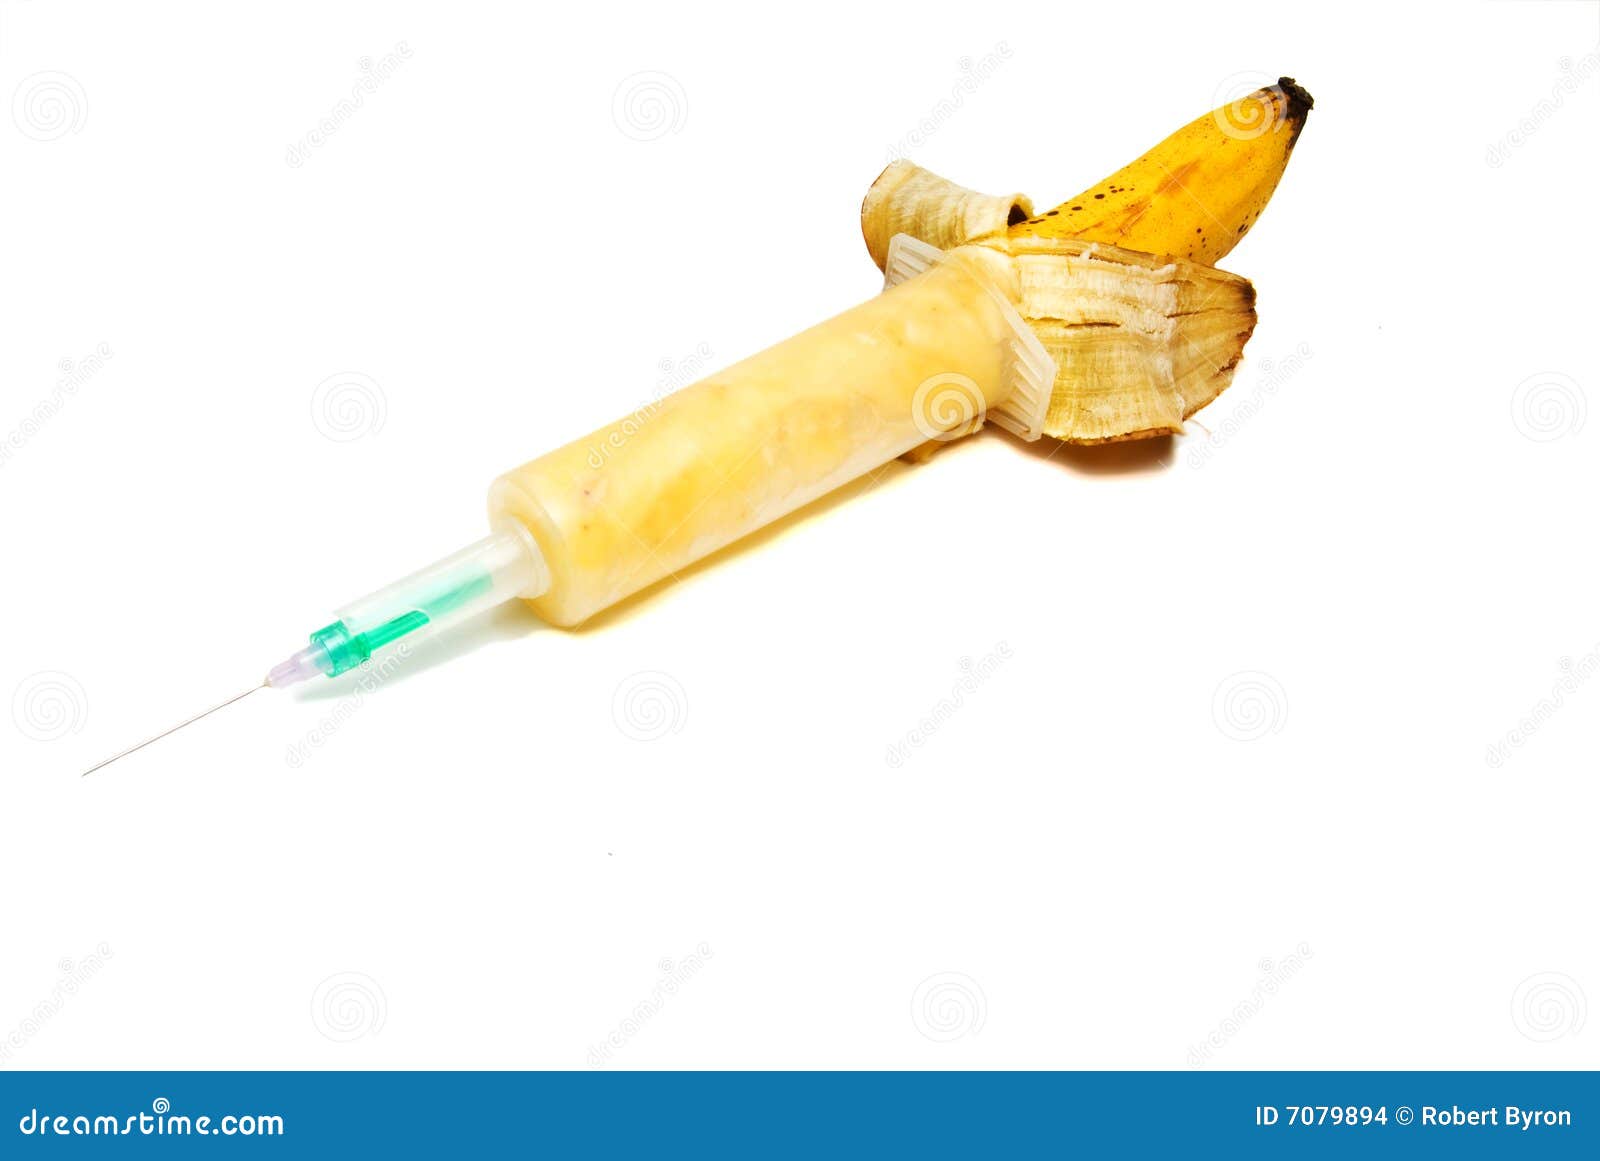 banana-syringe-7079894.jpg